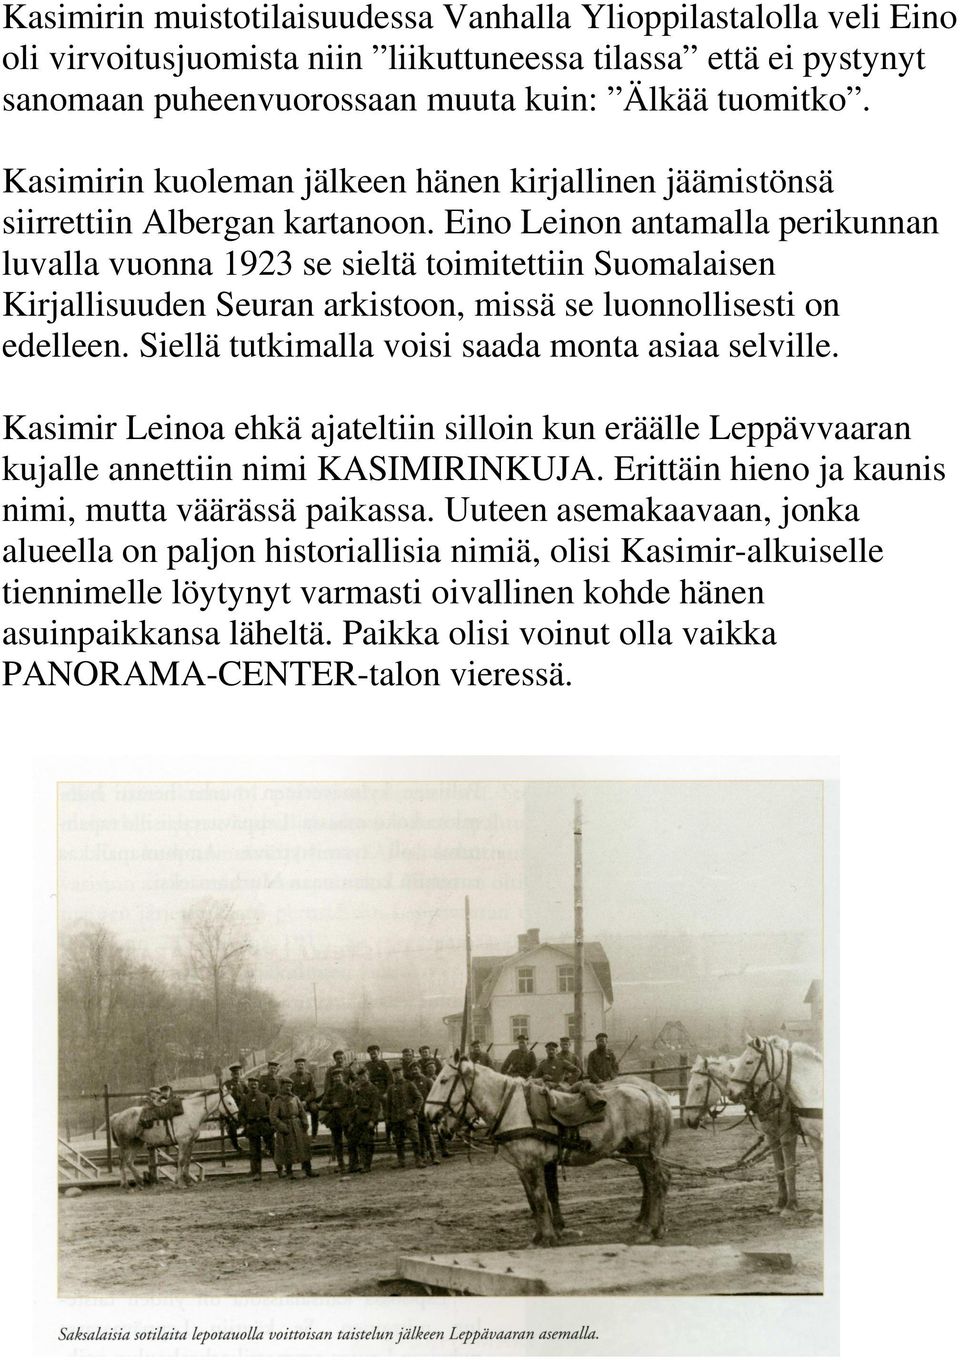 Eino Leinon antamalla perikunnan luvalla vuonna 1923 se sieltä toimitettiin Suomalaisen Kirjallisuuden Seuran arkistoon, missä se luonnollisesti on edelleen.